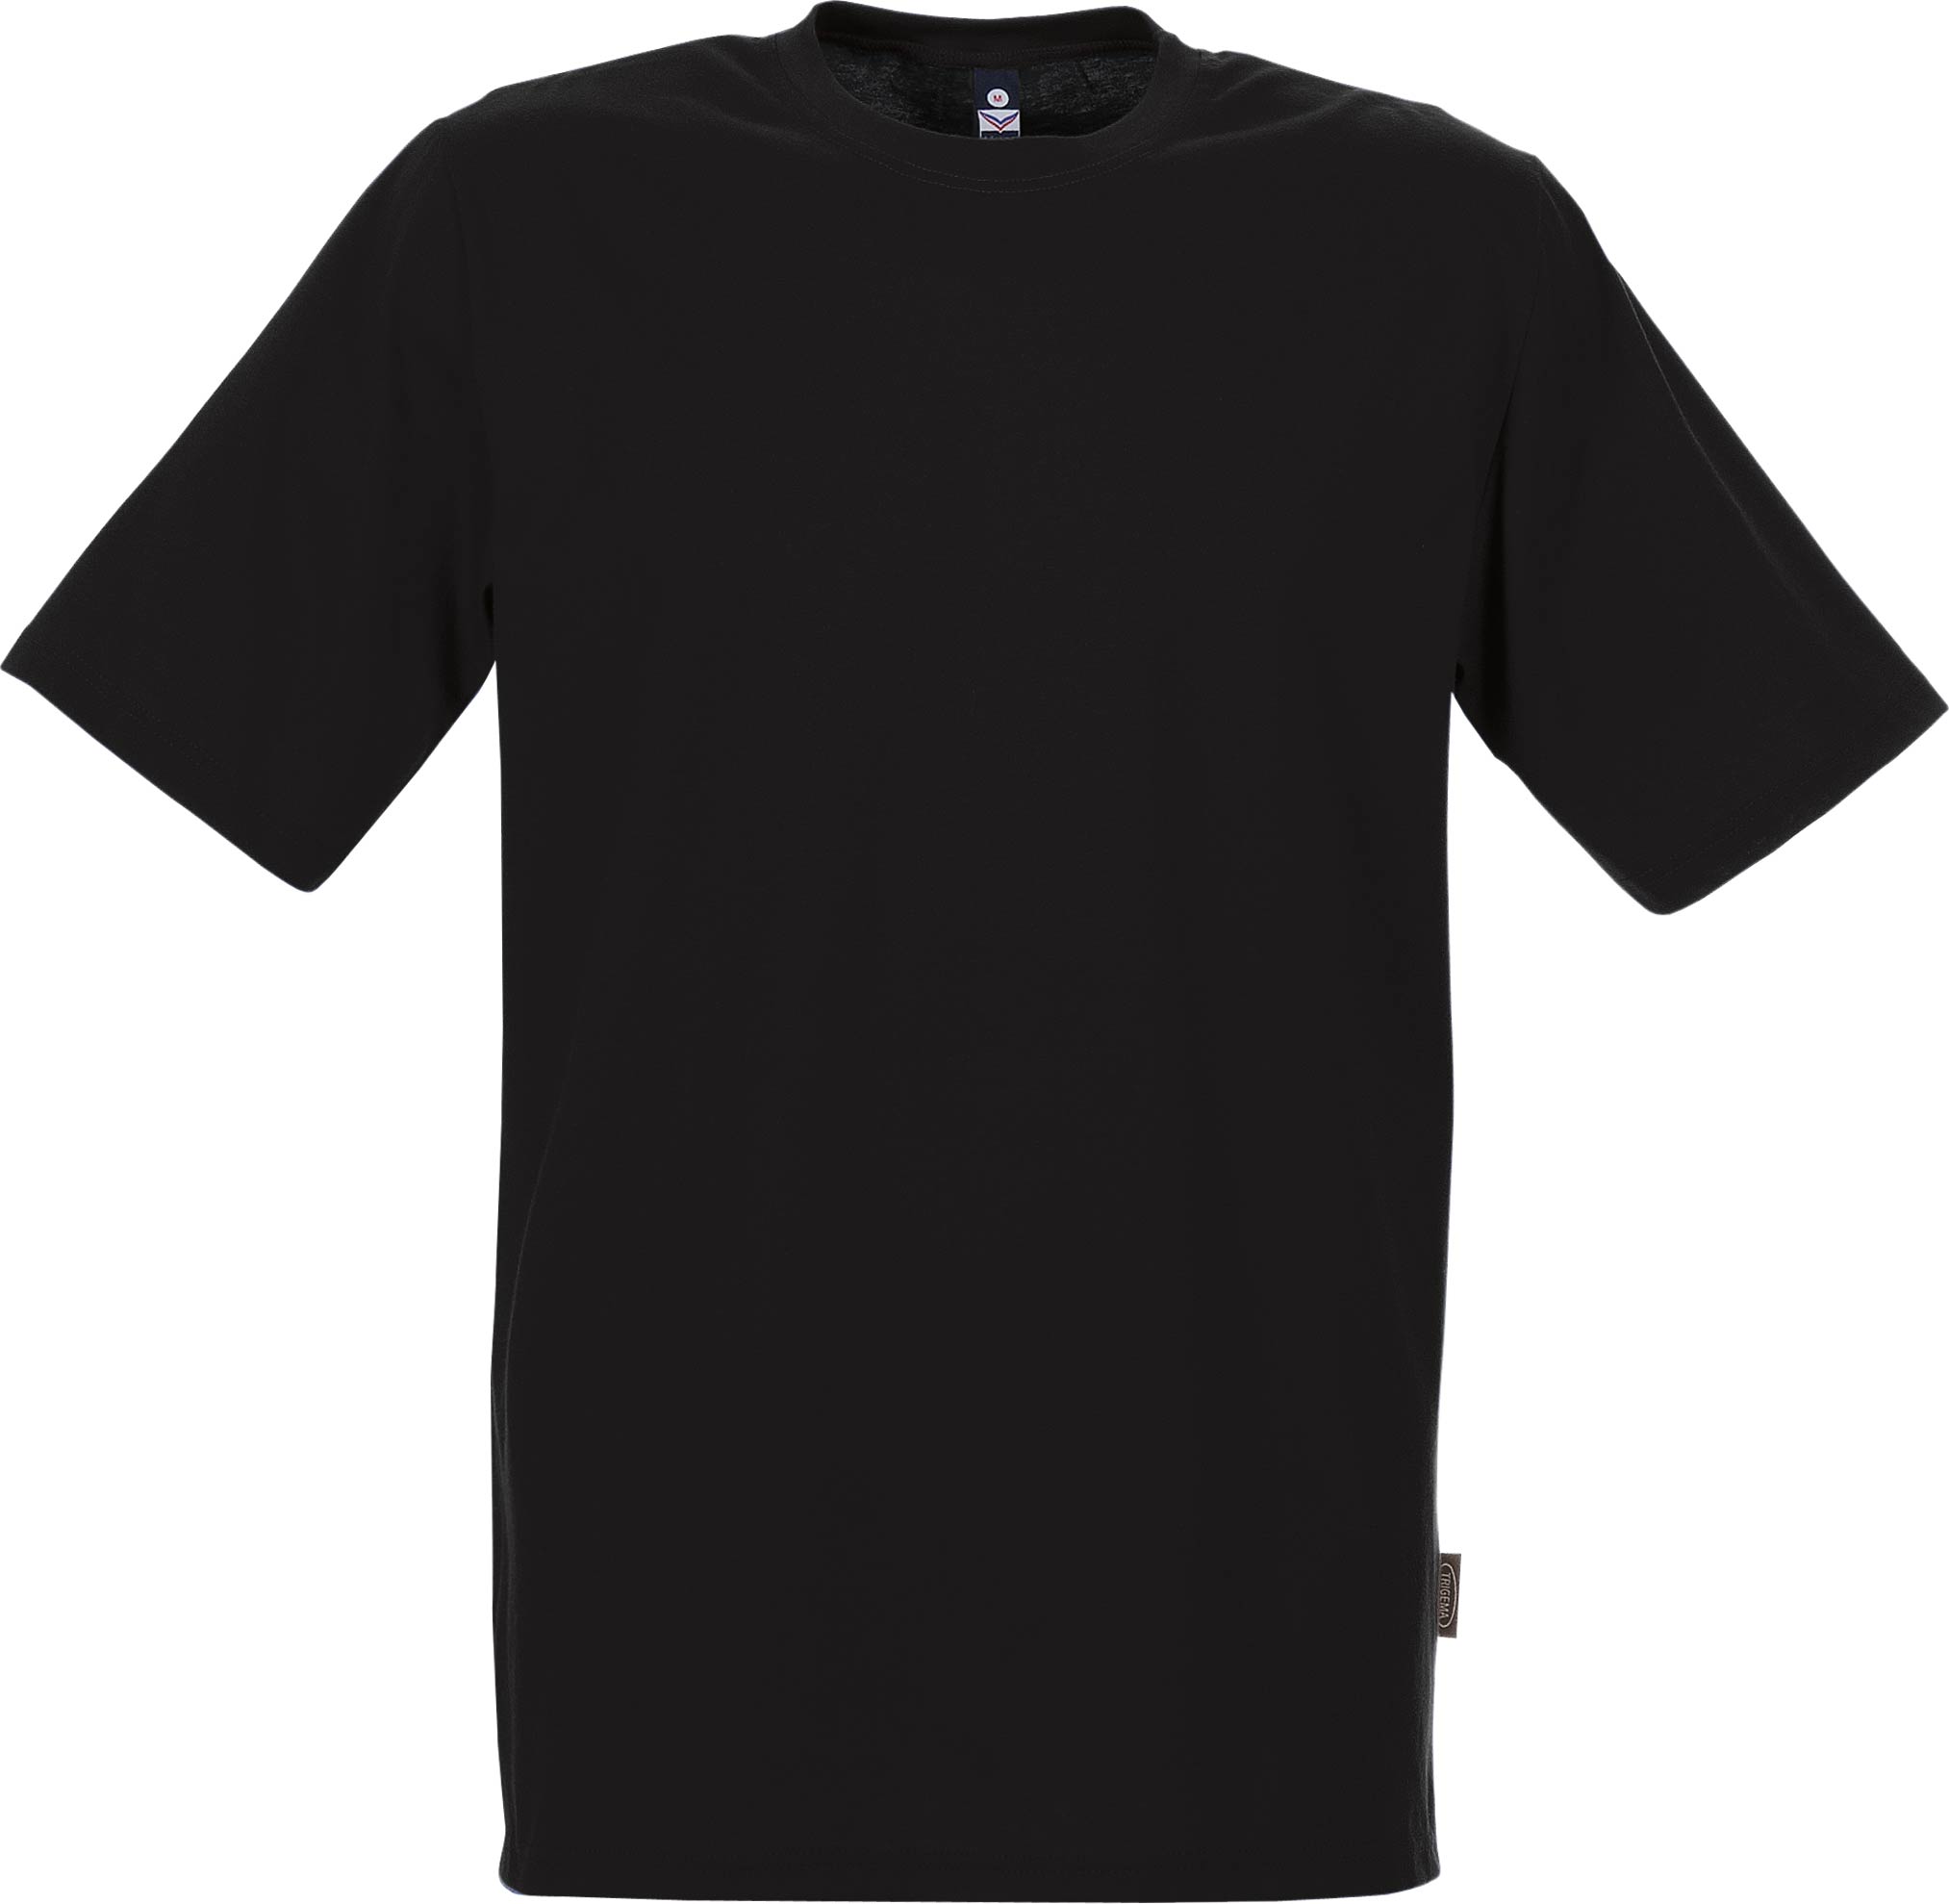 Schwarzes T-Shirt aus deutscher Produktion - Trigema T-Shirt